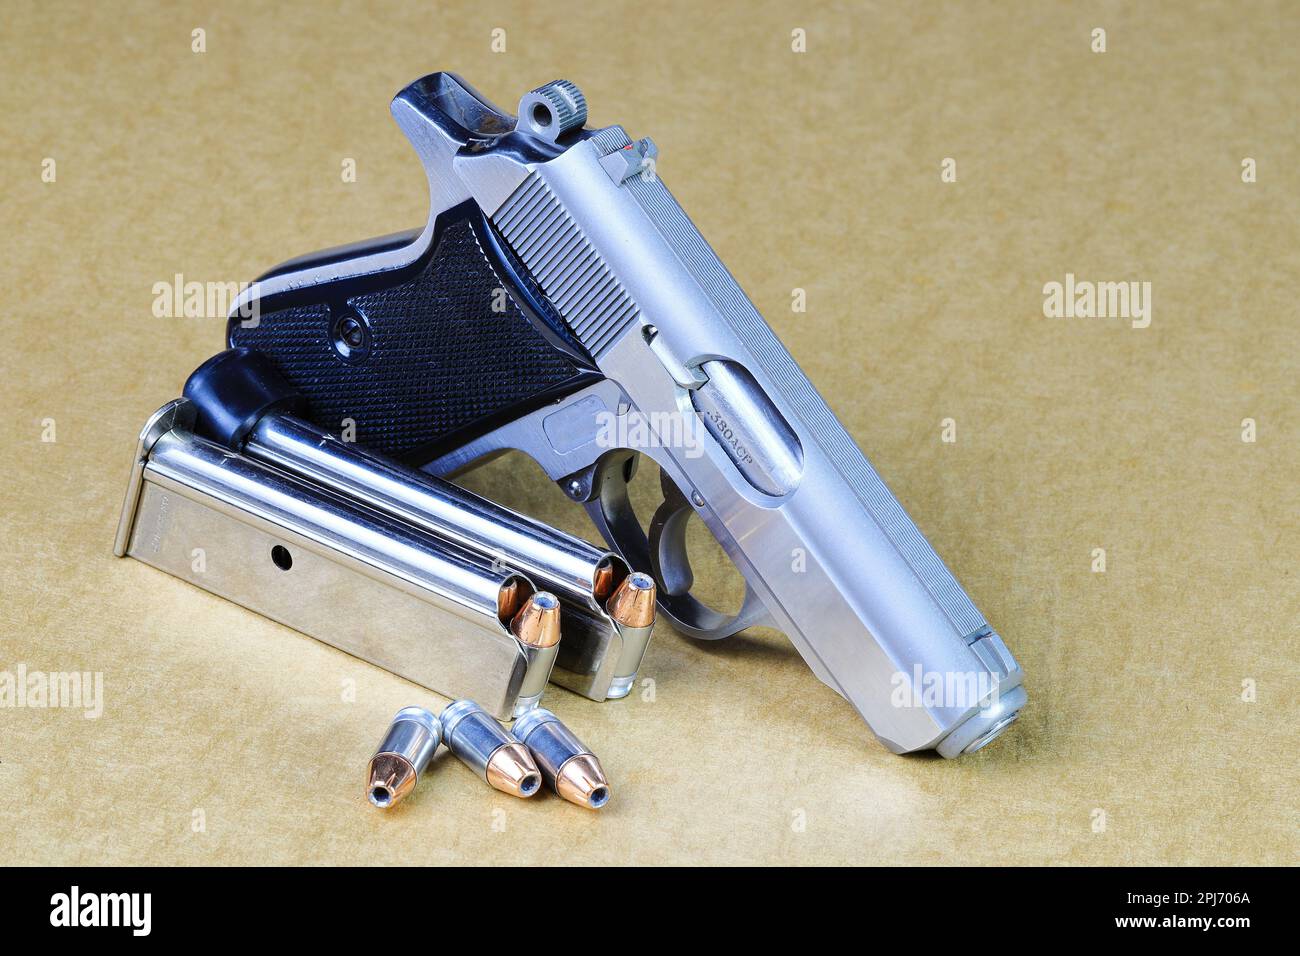 Pistolet semi-automatique compact, pistolet PPK en acier inoxydable avec magasins de rechange, vue latérale droite, prêt à l'emploi, isolé sur fond blanc Banque D'Images